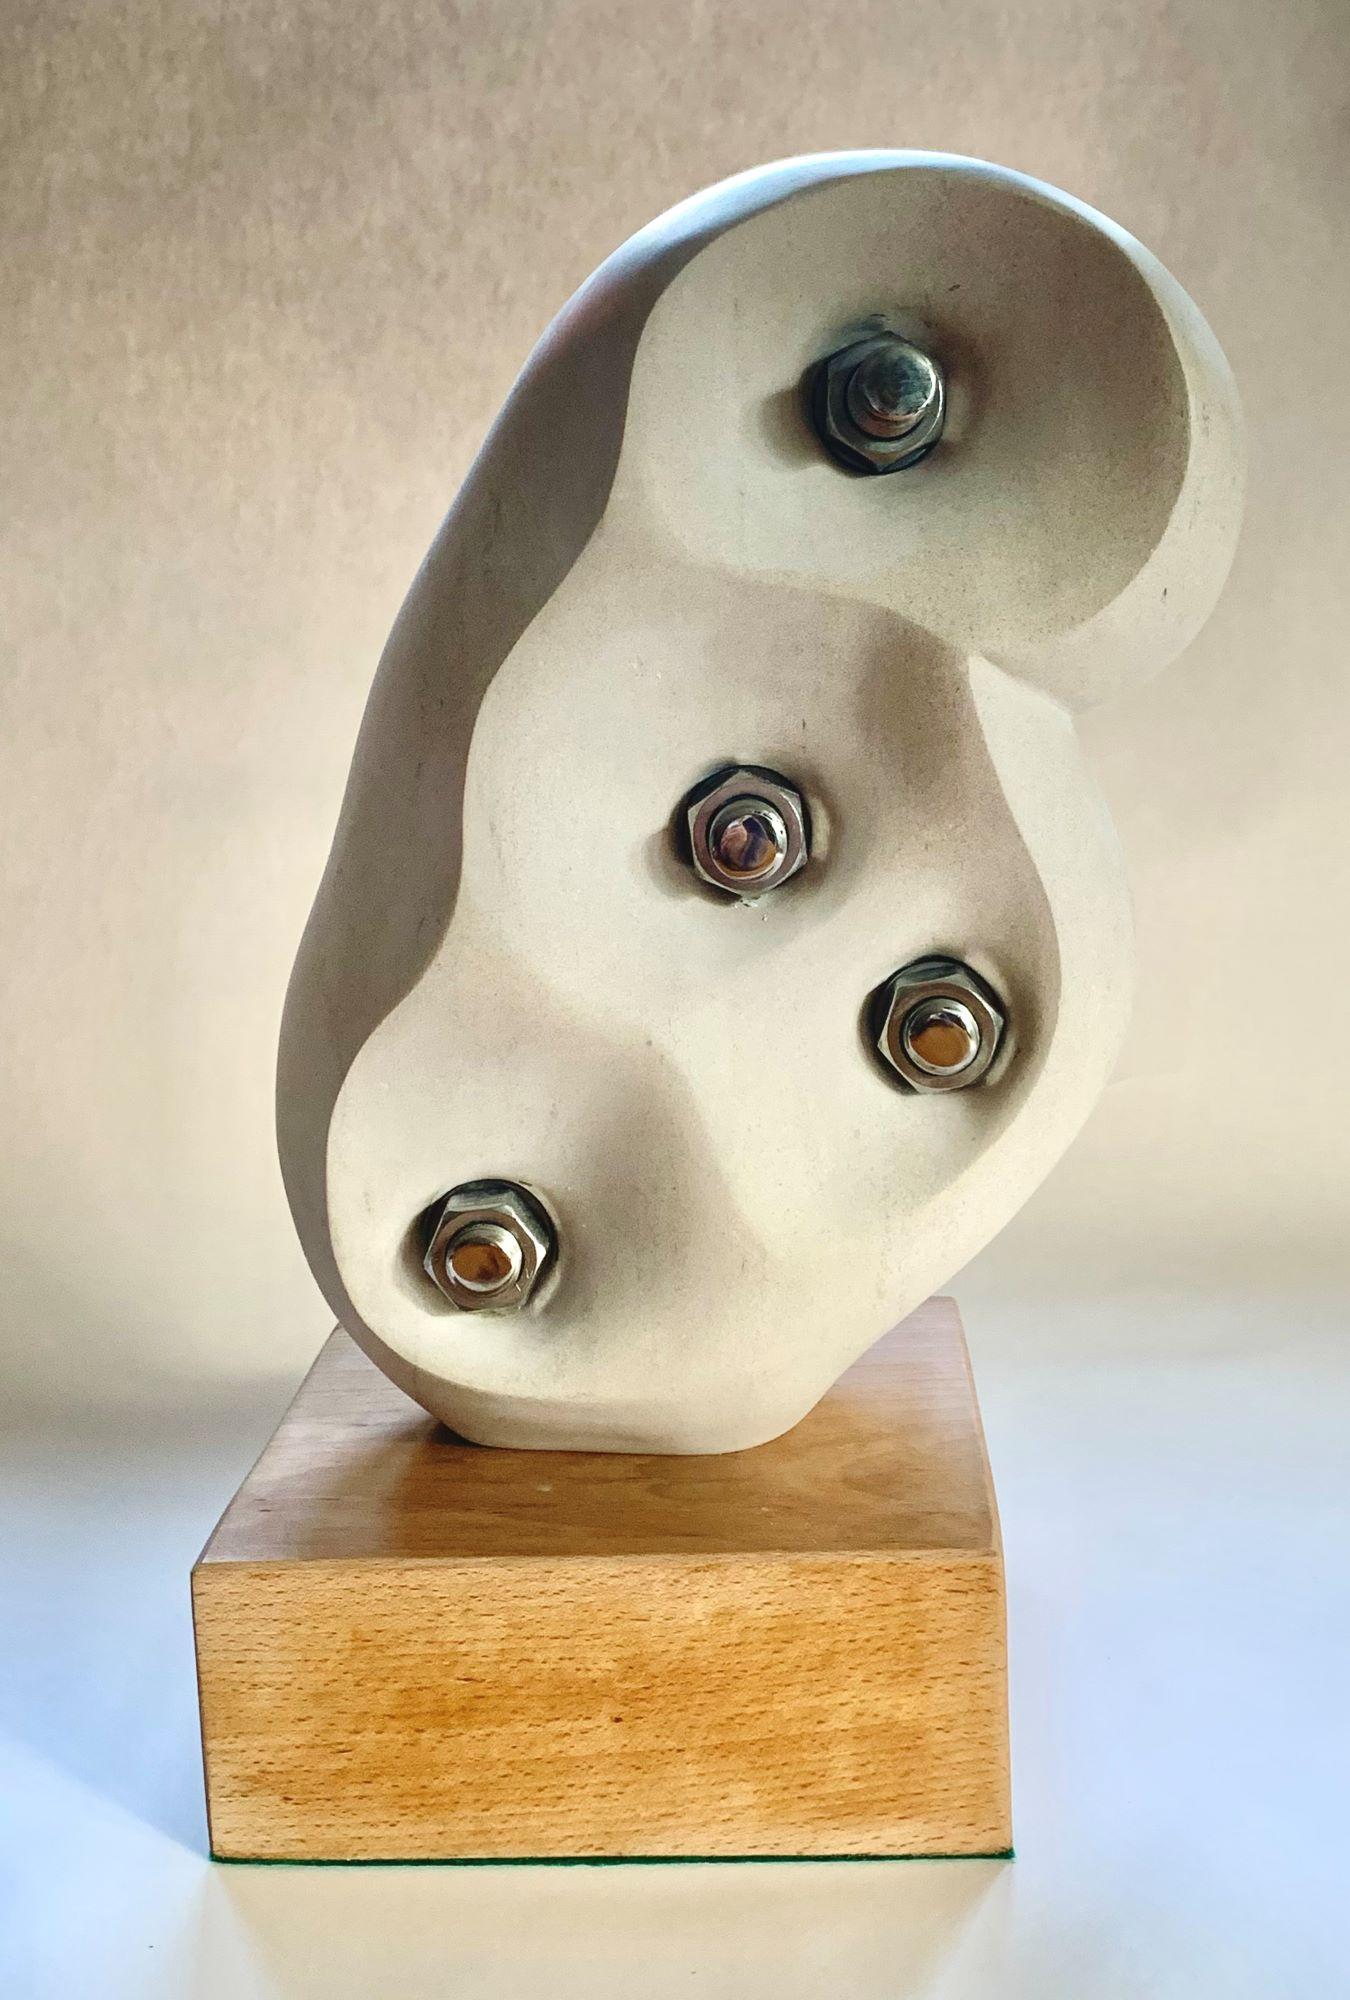 Without Bonds ist eine einzigartige Skulptur des zeitgenössischen Künstlers Peter Brooke-Ball aus Portlandkalkstein, Edelstahl und Buchenholzsockel mit den Maßen 51 × 26 × 20,5 cm.  
Die Skulptur wird mit einem Echtheitszertifikat geliefert.

Der